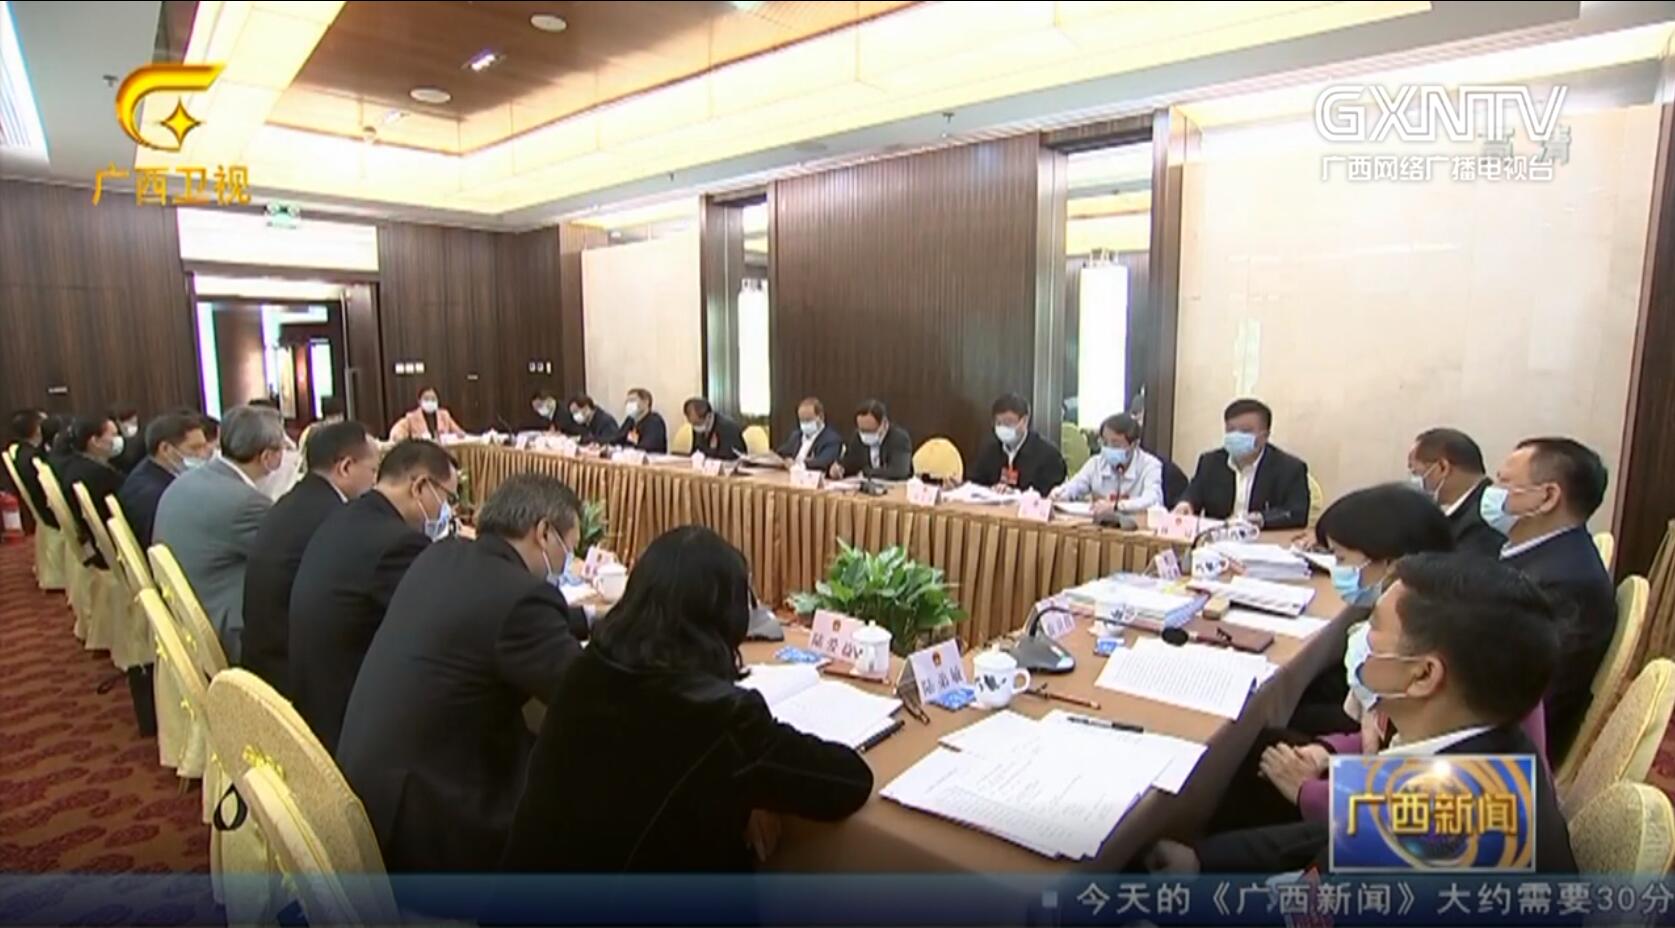 【视频】广西代表团分组审议有关决议草案